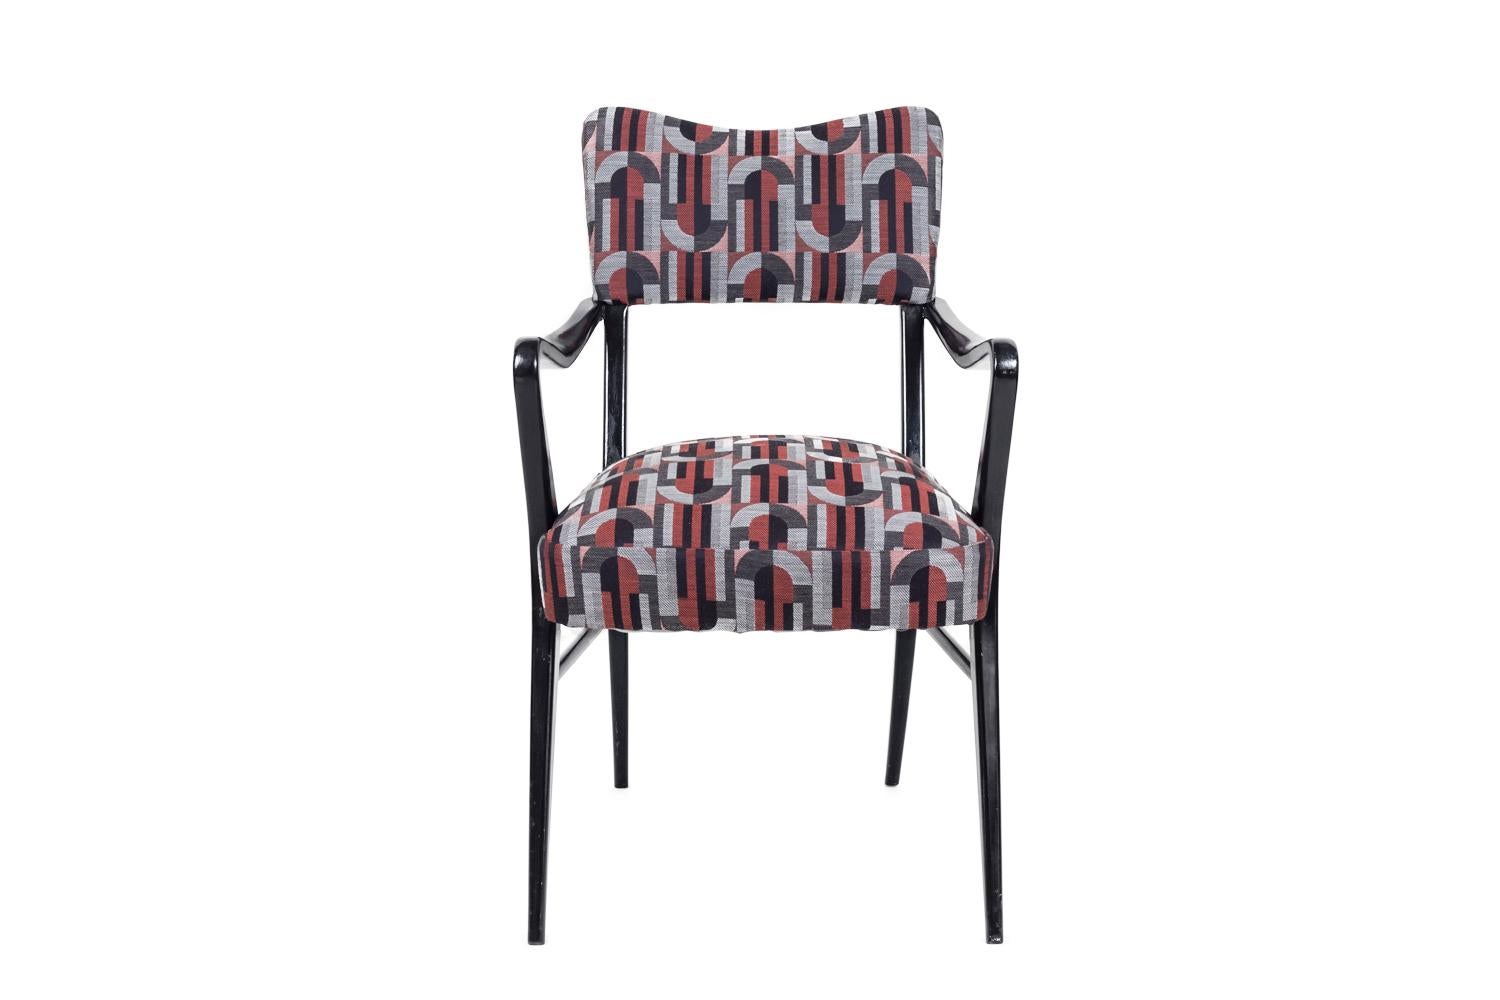 Ico Parisi, im Stil von.

Paar Sessel aus schwarz lackiertem Holz auf vier spitz zulaufenden und geneigten Beinen, die durch zwei seitliche Bänder miteinander verbunden sind. Gebogene Form der Armlehnen. Hohe Rückenlehne und Sitzfläche, bezogen